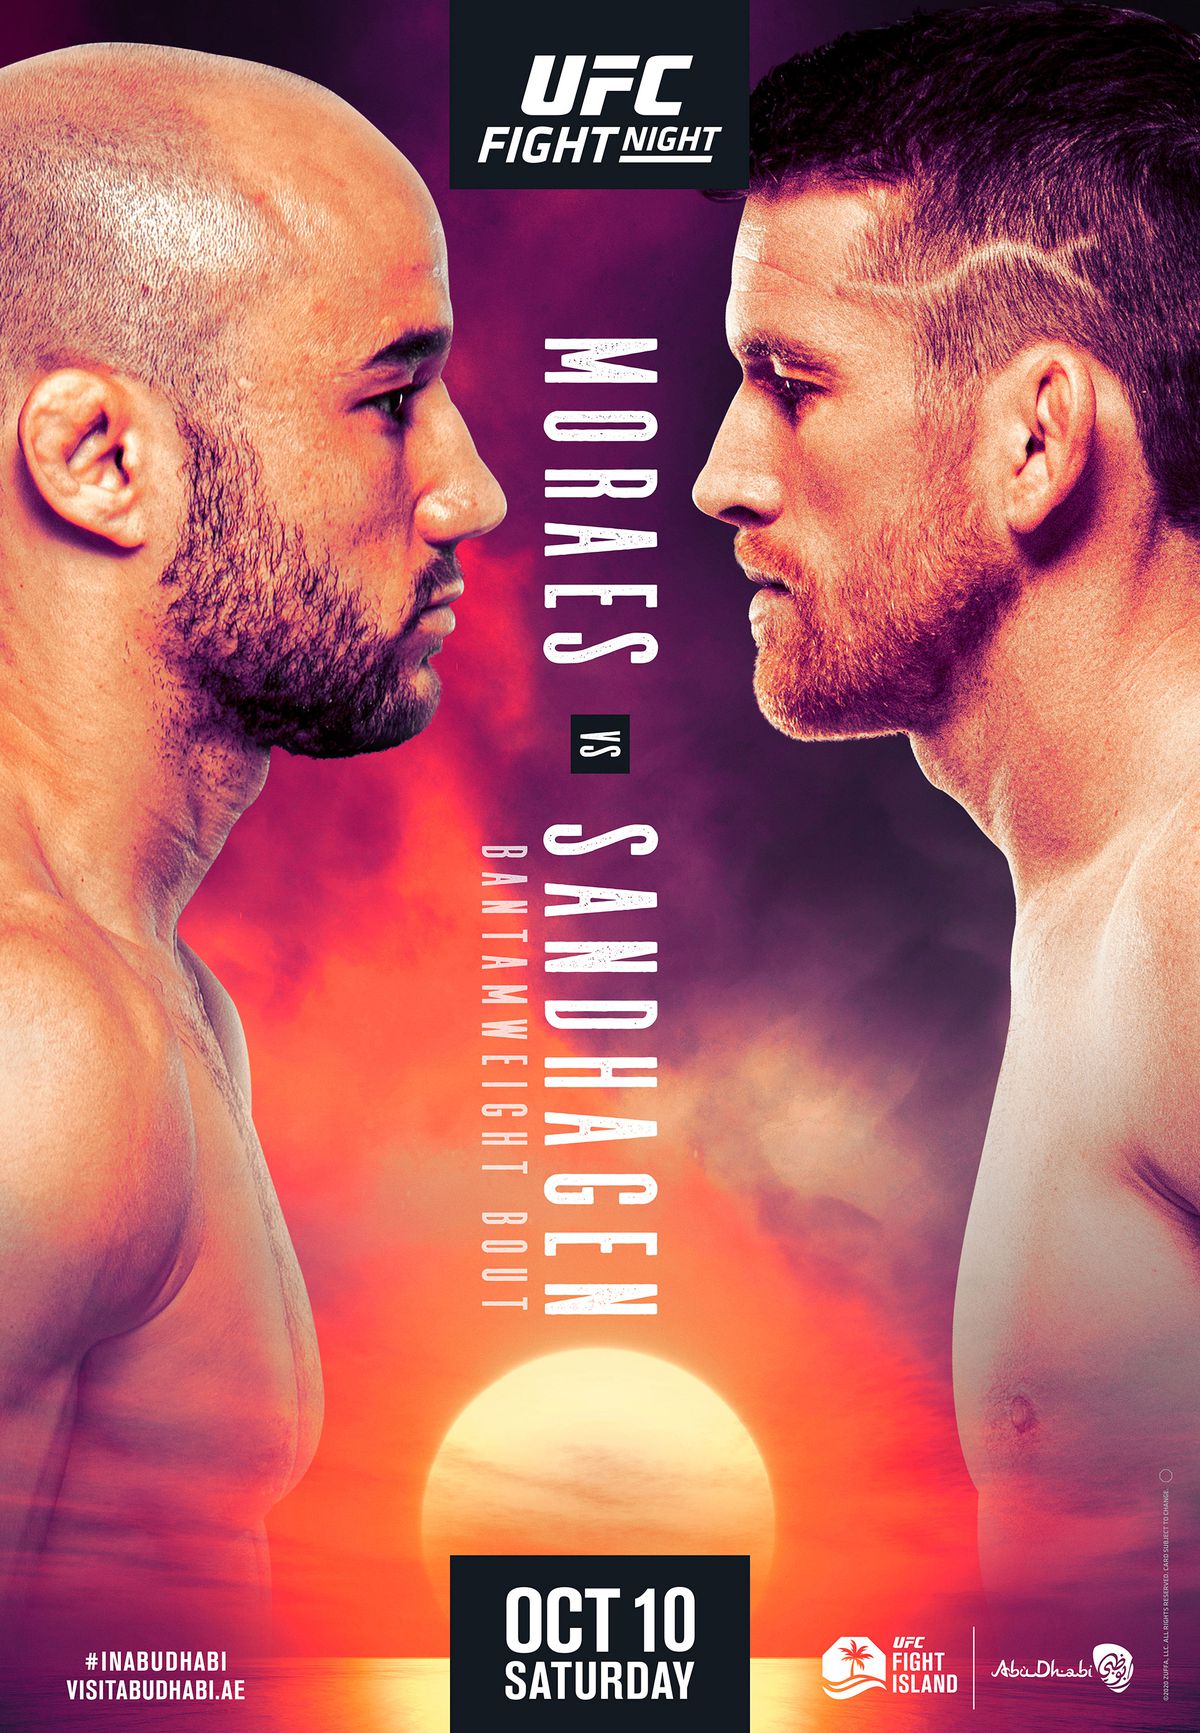 Pic: Poster drops for ‘Moraes vs. Sandhagen’ on Oct. 10 on ‘Fight